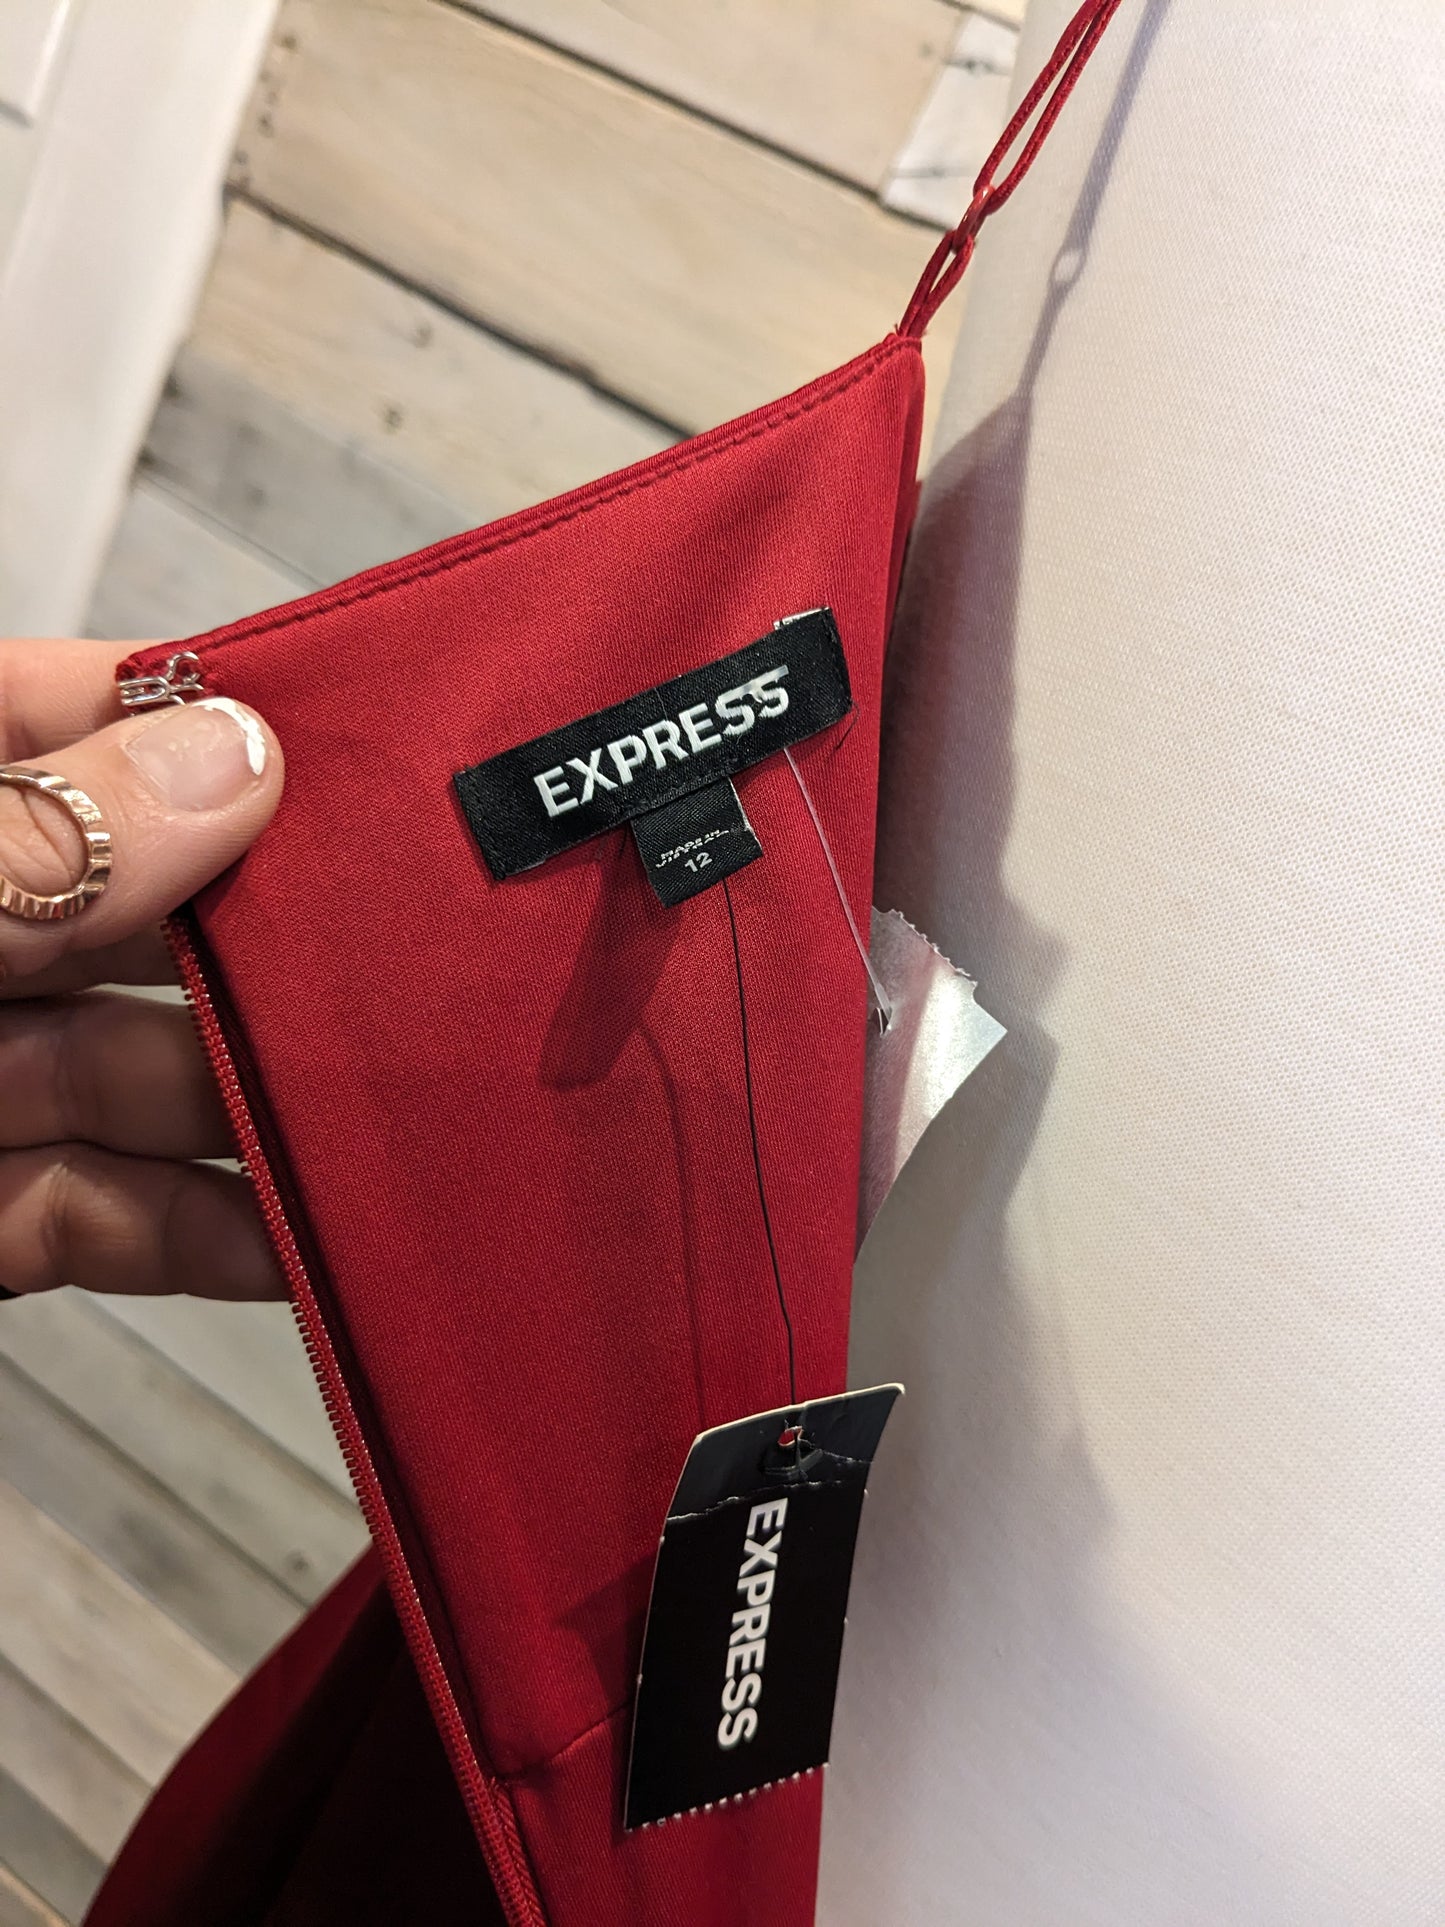 Express Red Satin Maxi Dress Sz 12